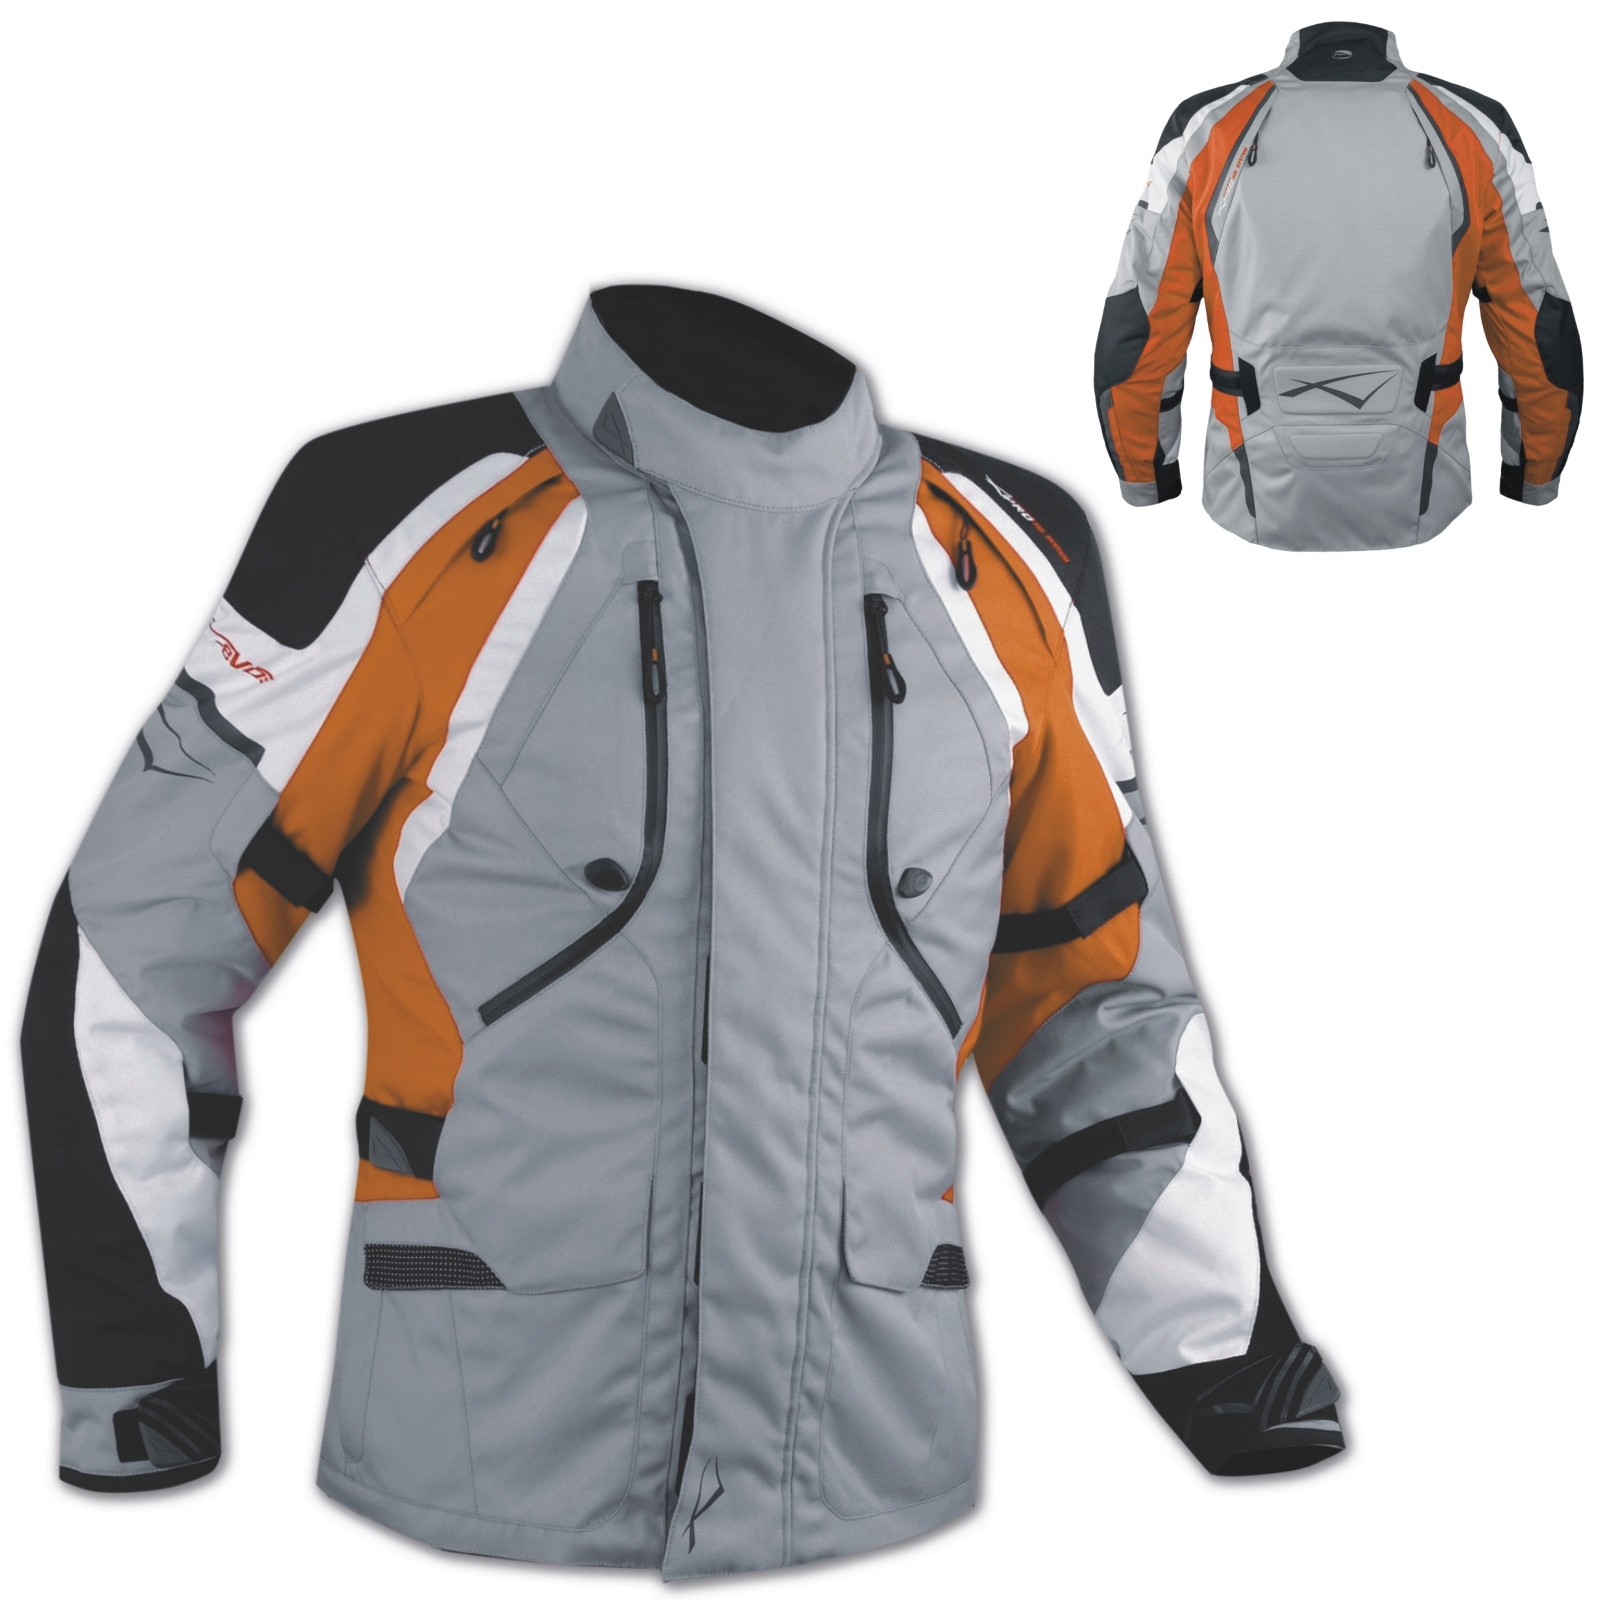 por favor no lo hagas Estrecho Antecedente Offroad Enduro Moto chaqueta impermeable tela CE aprobó Salidas de Aire  Naranja | eBay